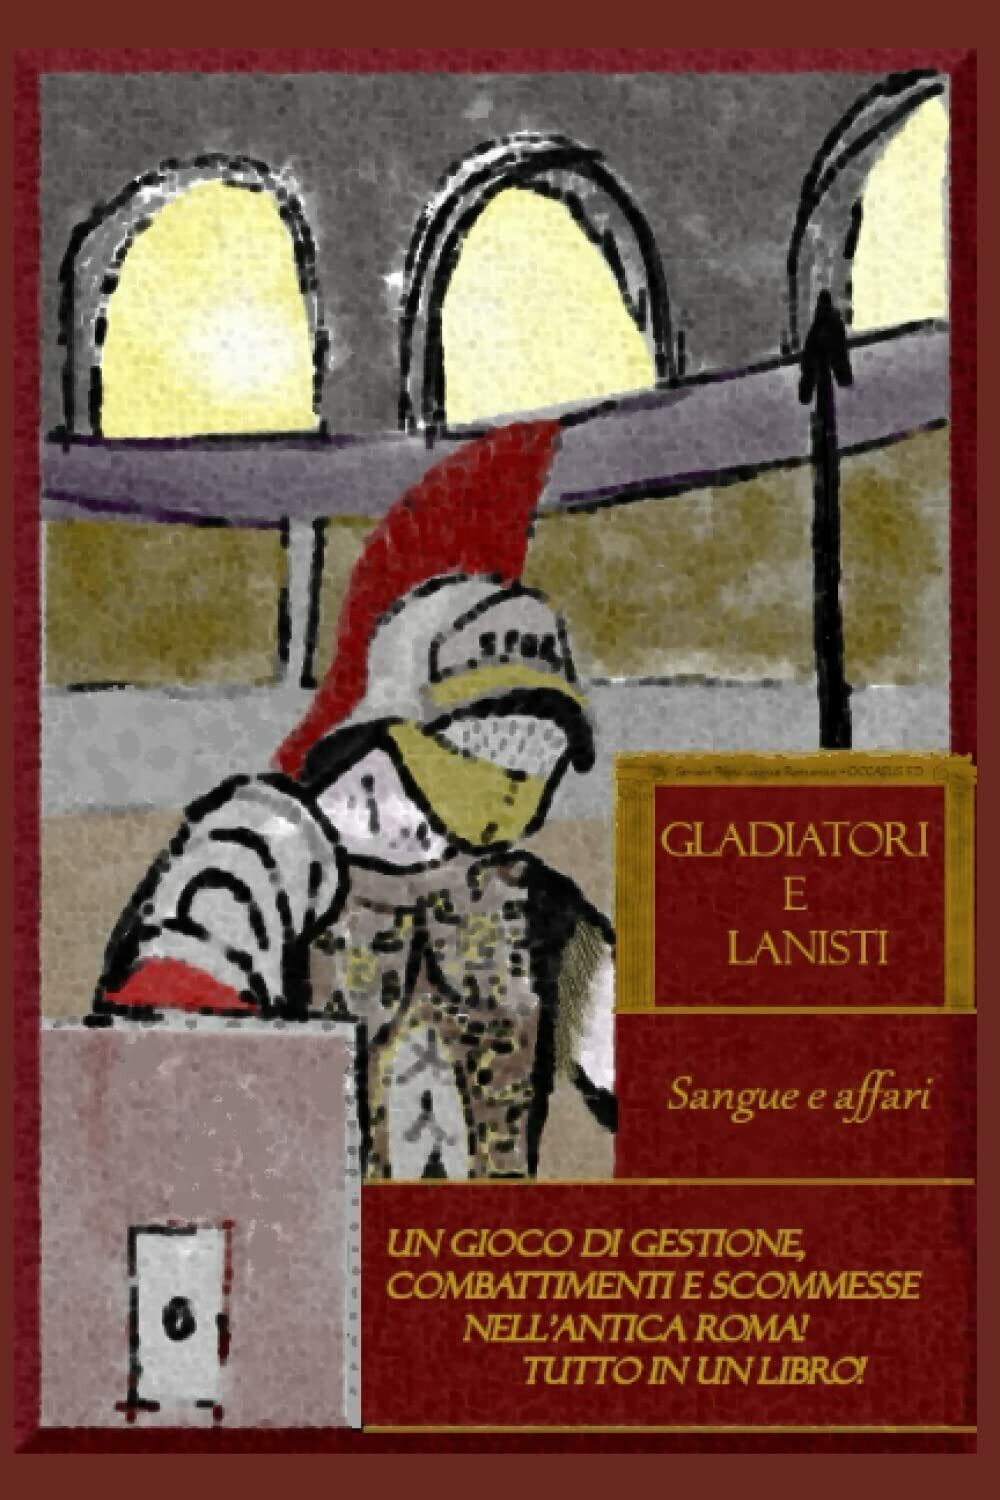 Gladiatori e Lanisti: Sangue e Affari: Un libro gioco di gestione, combattimenti